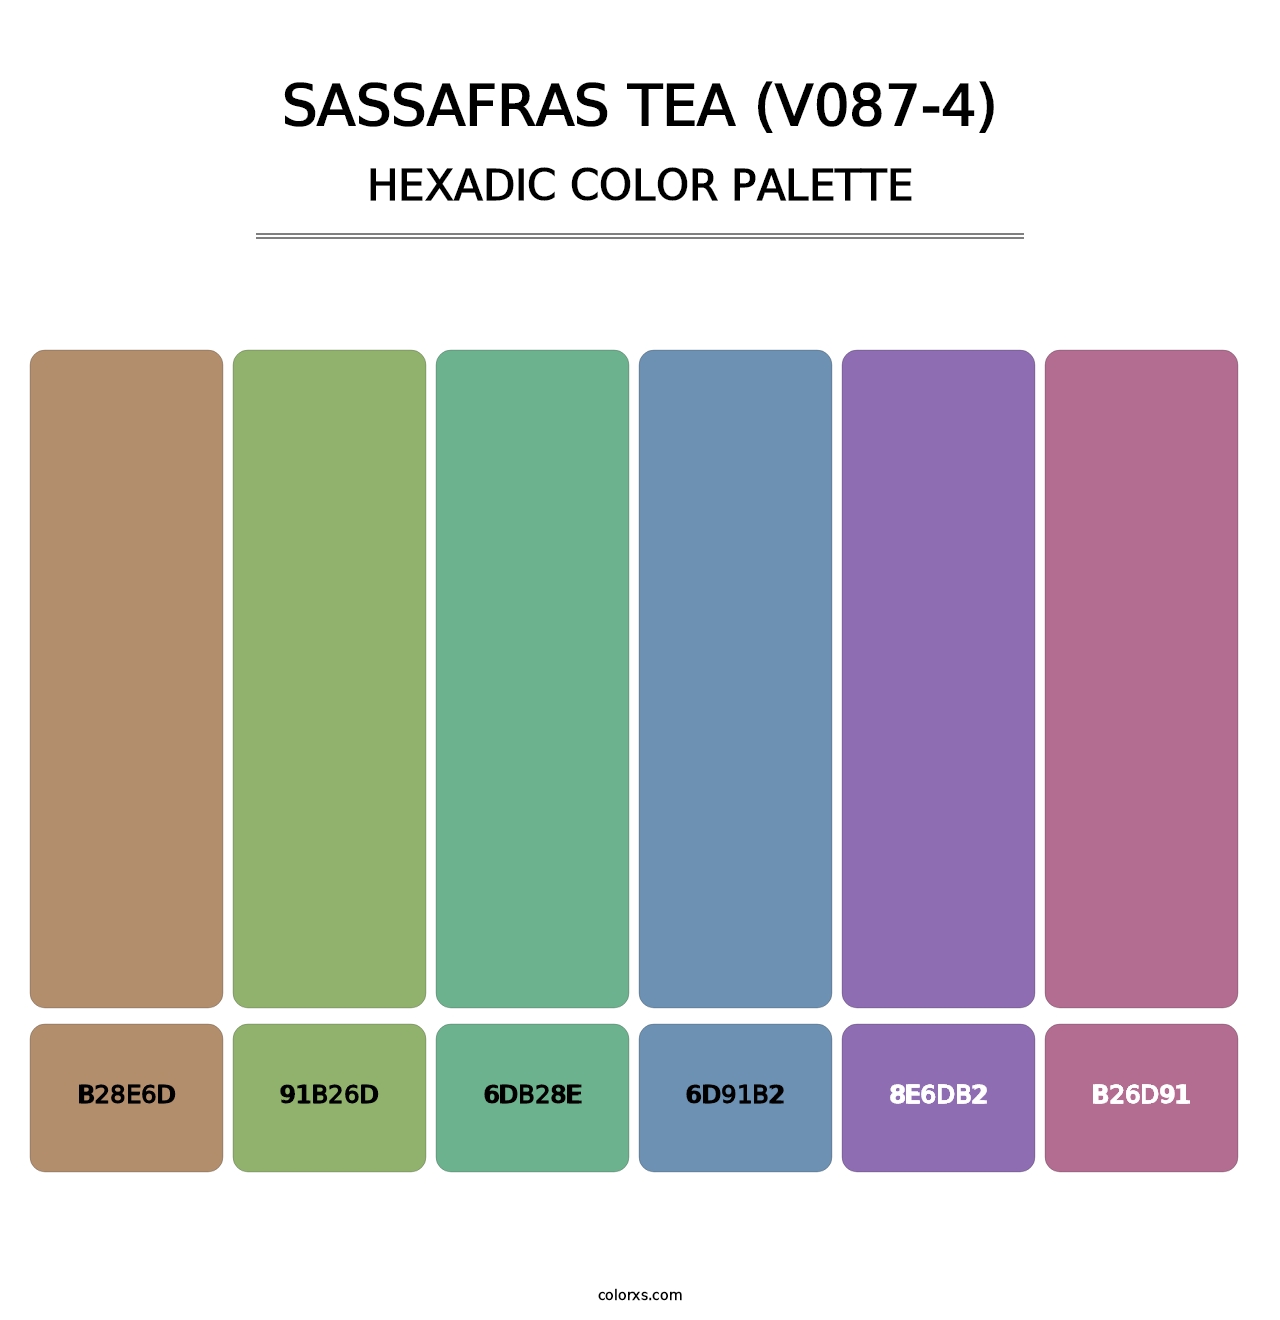 Sassafras Tea (V087-4) - Hexadic Color Palette